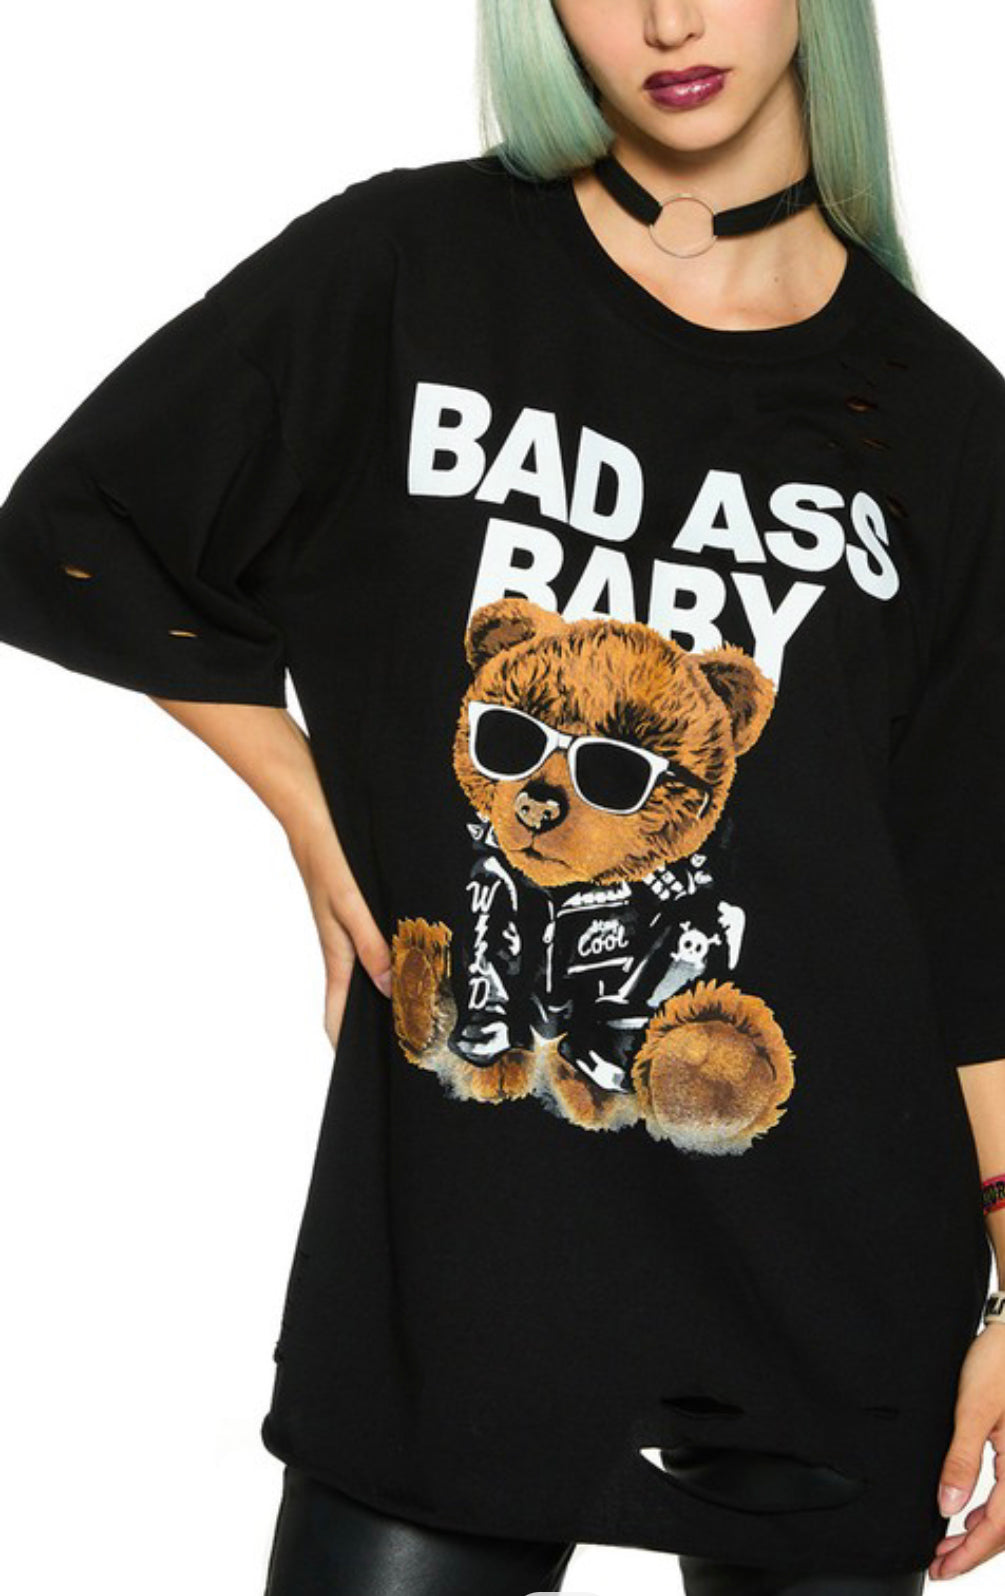 Boyfriend “Bad Ass Baby bear” Tee